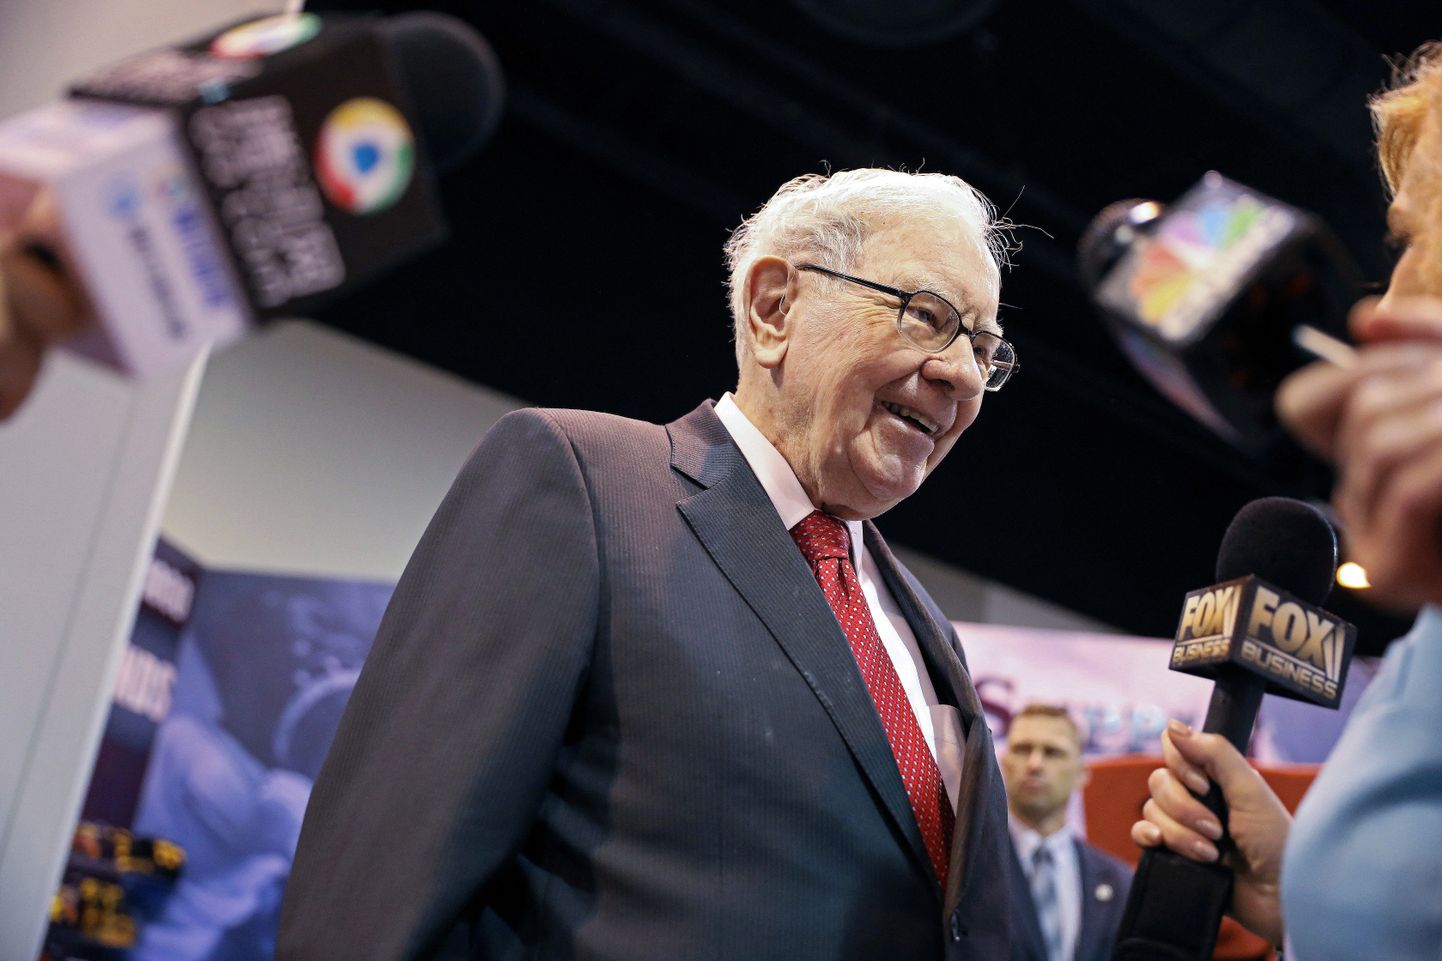 Investeerimisguru Warren Buffett on olnud aktsiate ostmise asemel pigem neid rohkem müümas ja ostmas USA valitsuse lühiajalisi võlakirju.